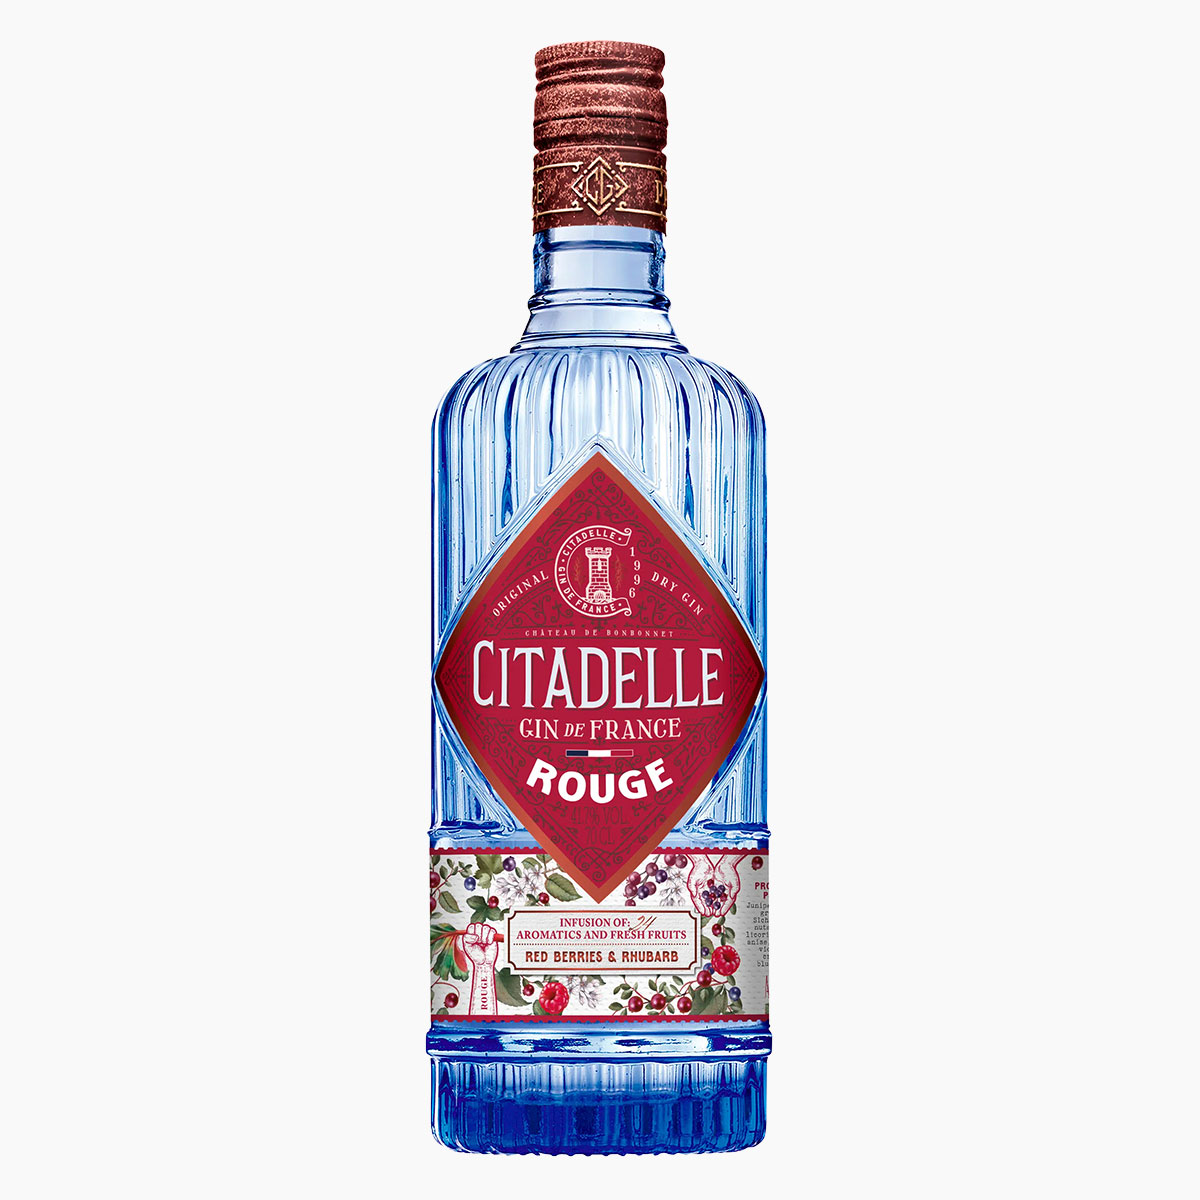 Brug Citadelle Rouge Gin til en forbedret oplevelse